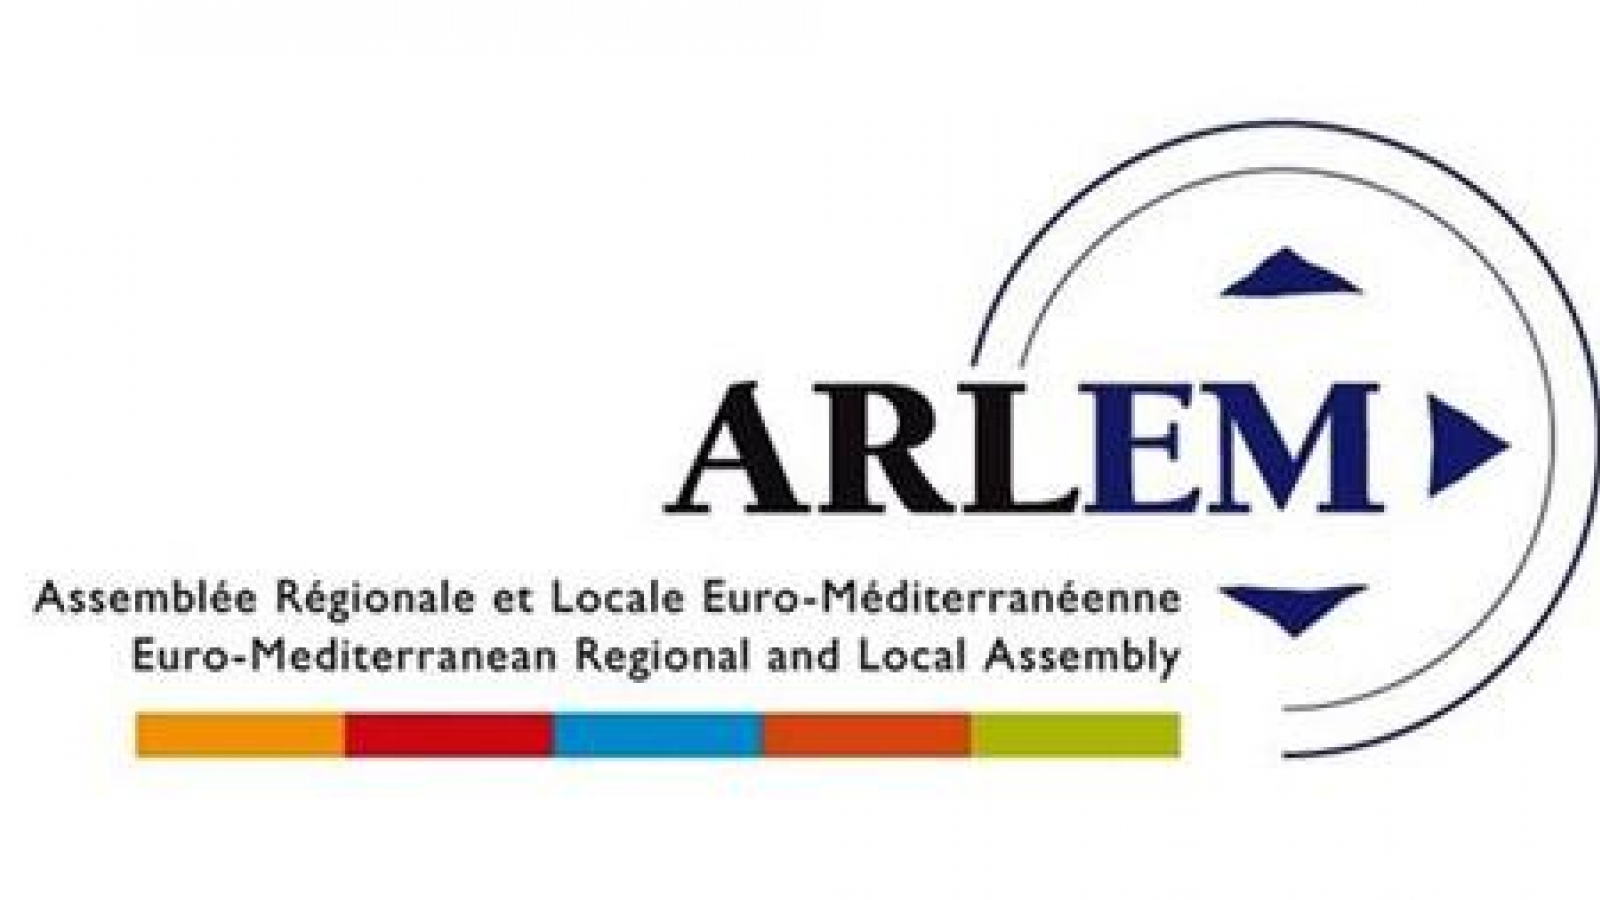 El 10º aniversario de la Asamblea Regional y Local Mediterránea se celebrará el 2019 en Sevilla